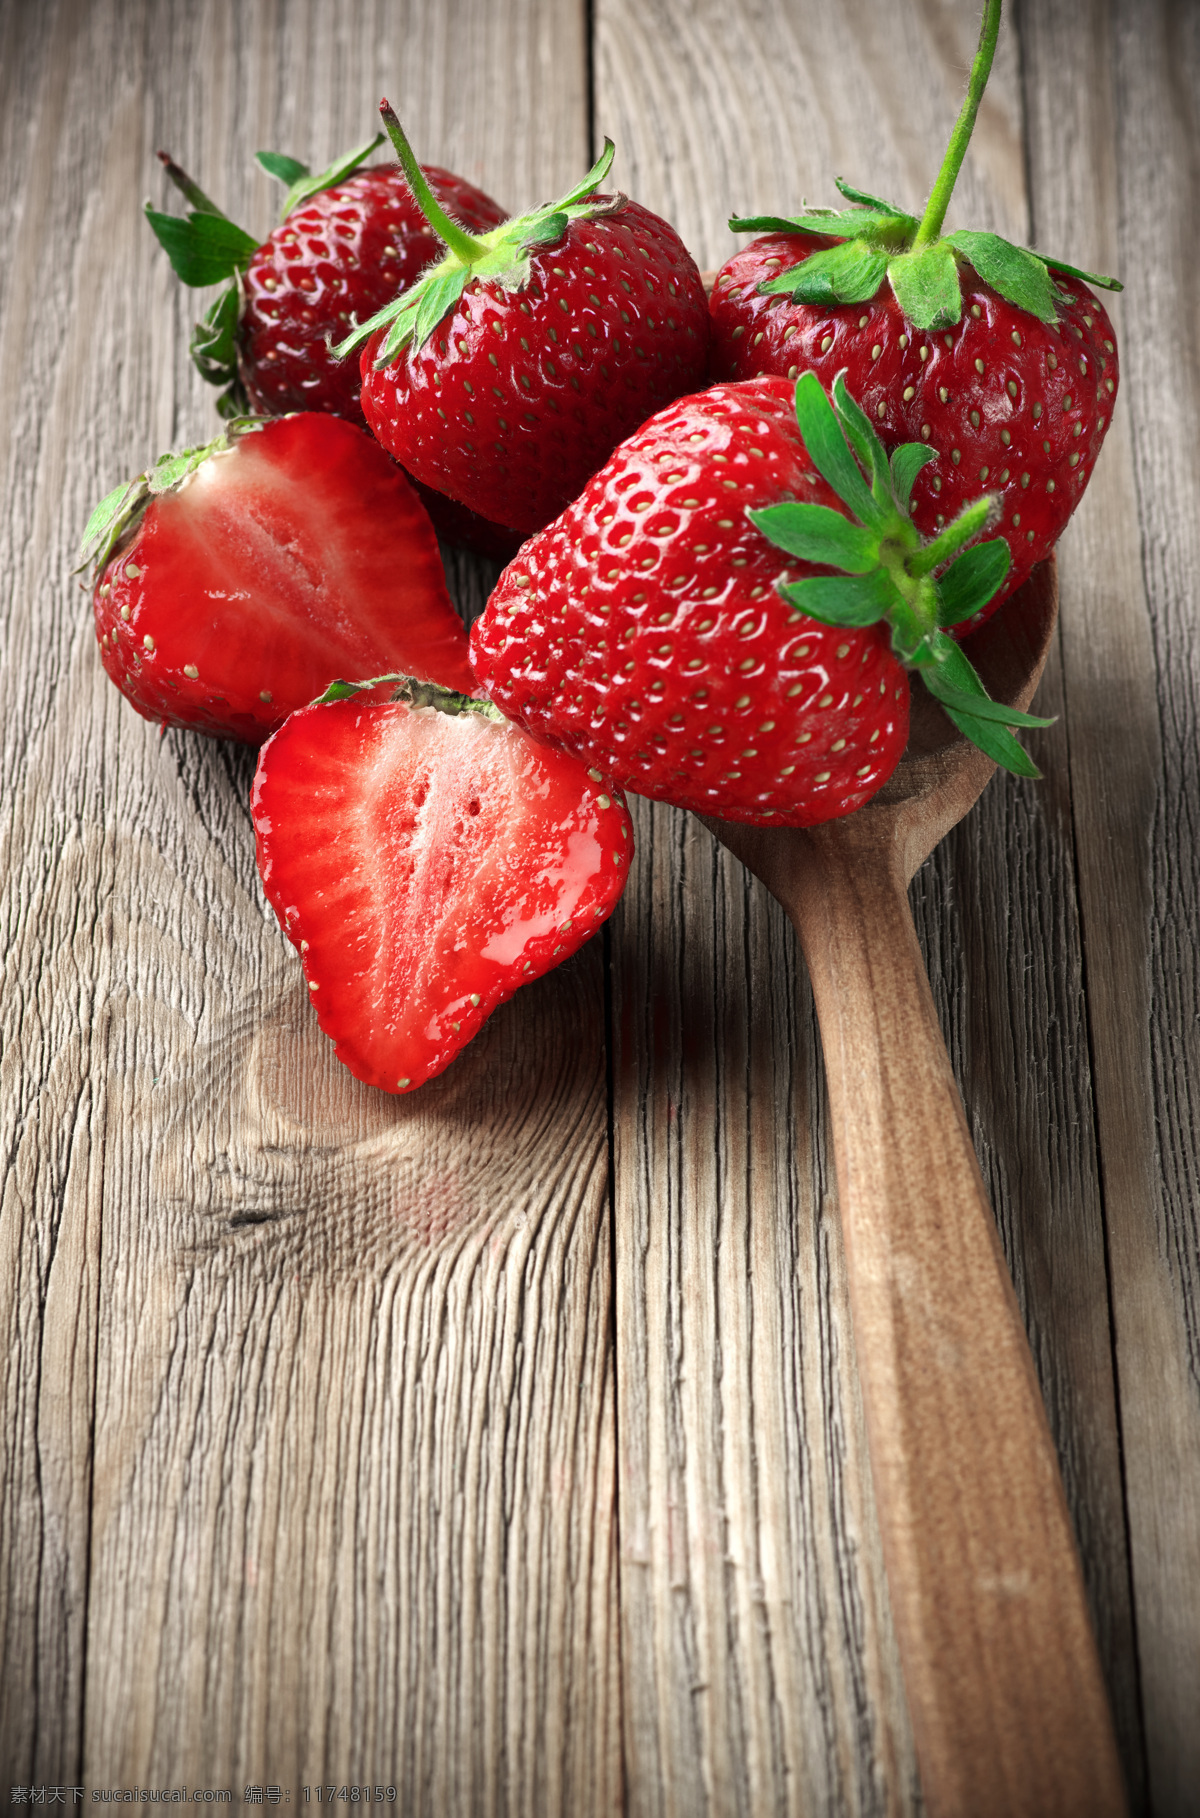 木勺里的草莓 木勺 草莓 新鲜草莓 草莓摄影 新鲜水果 水果蔬菜 餐饮美食 黑色